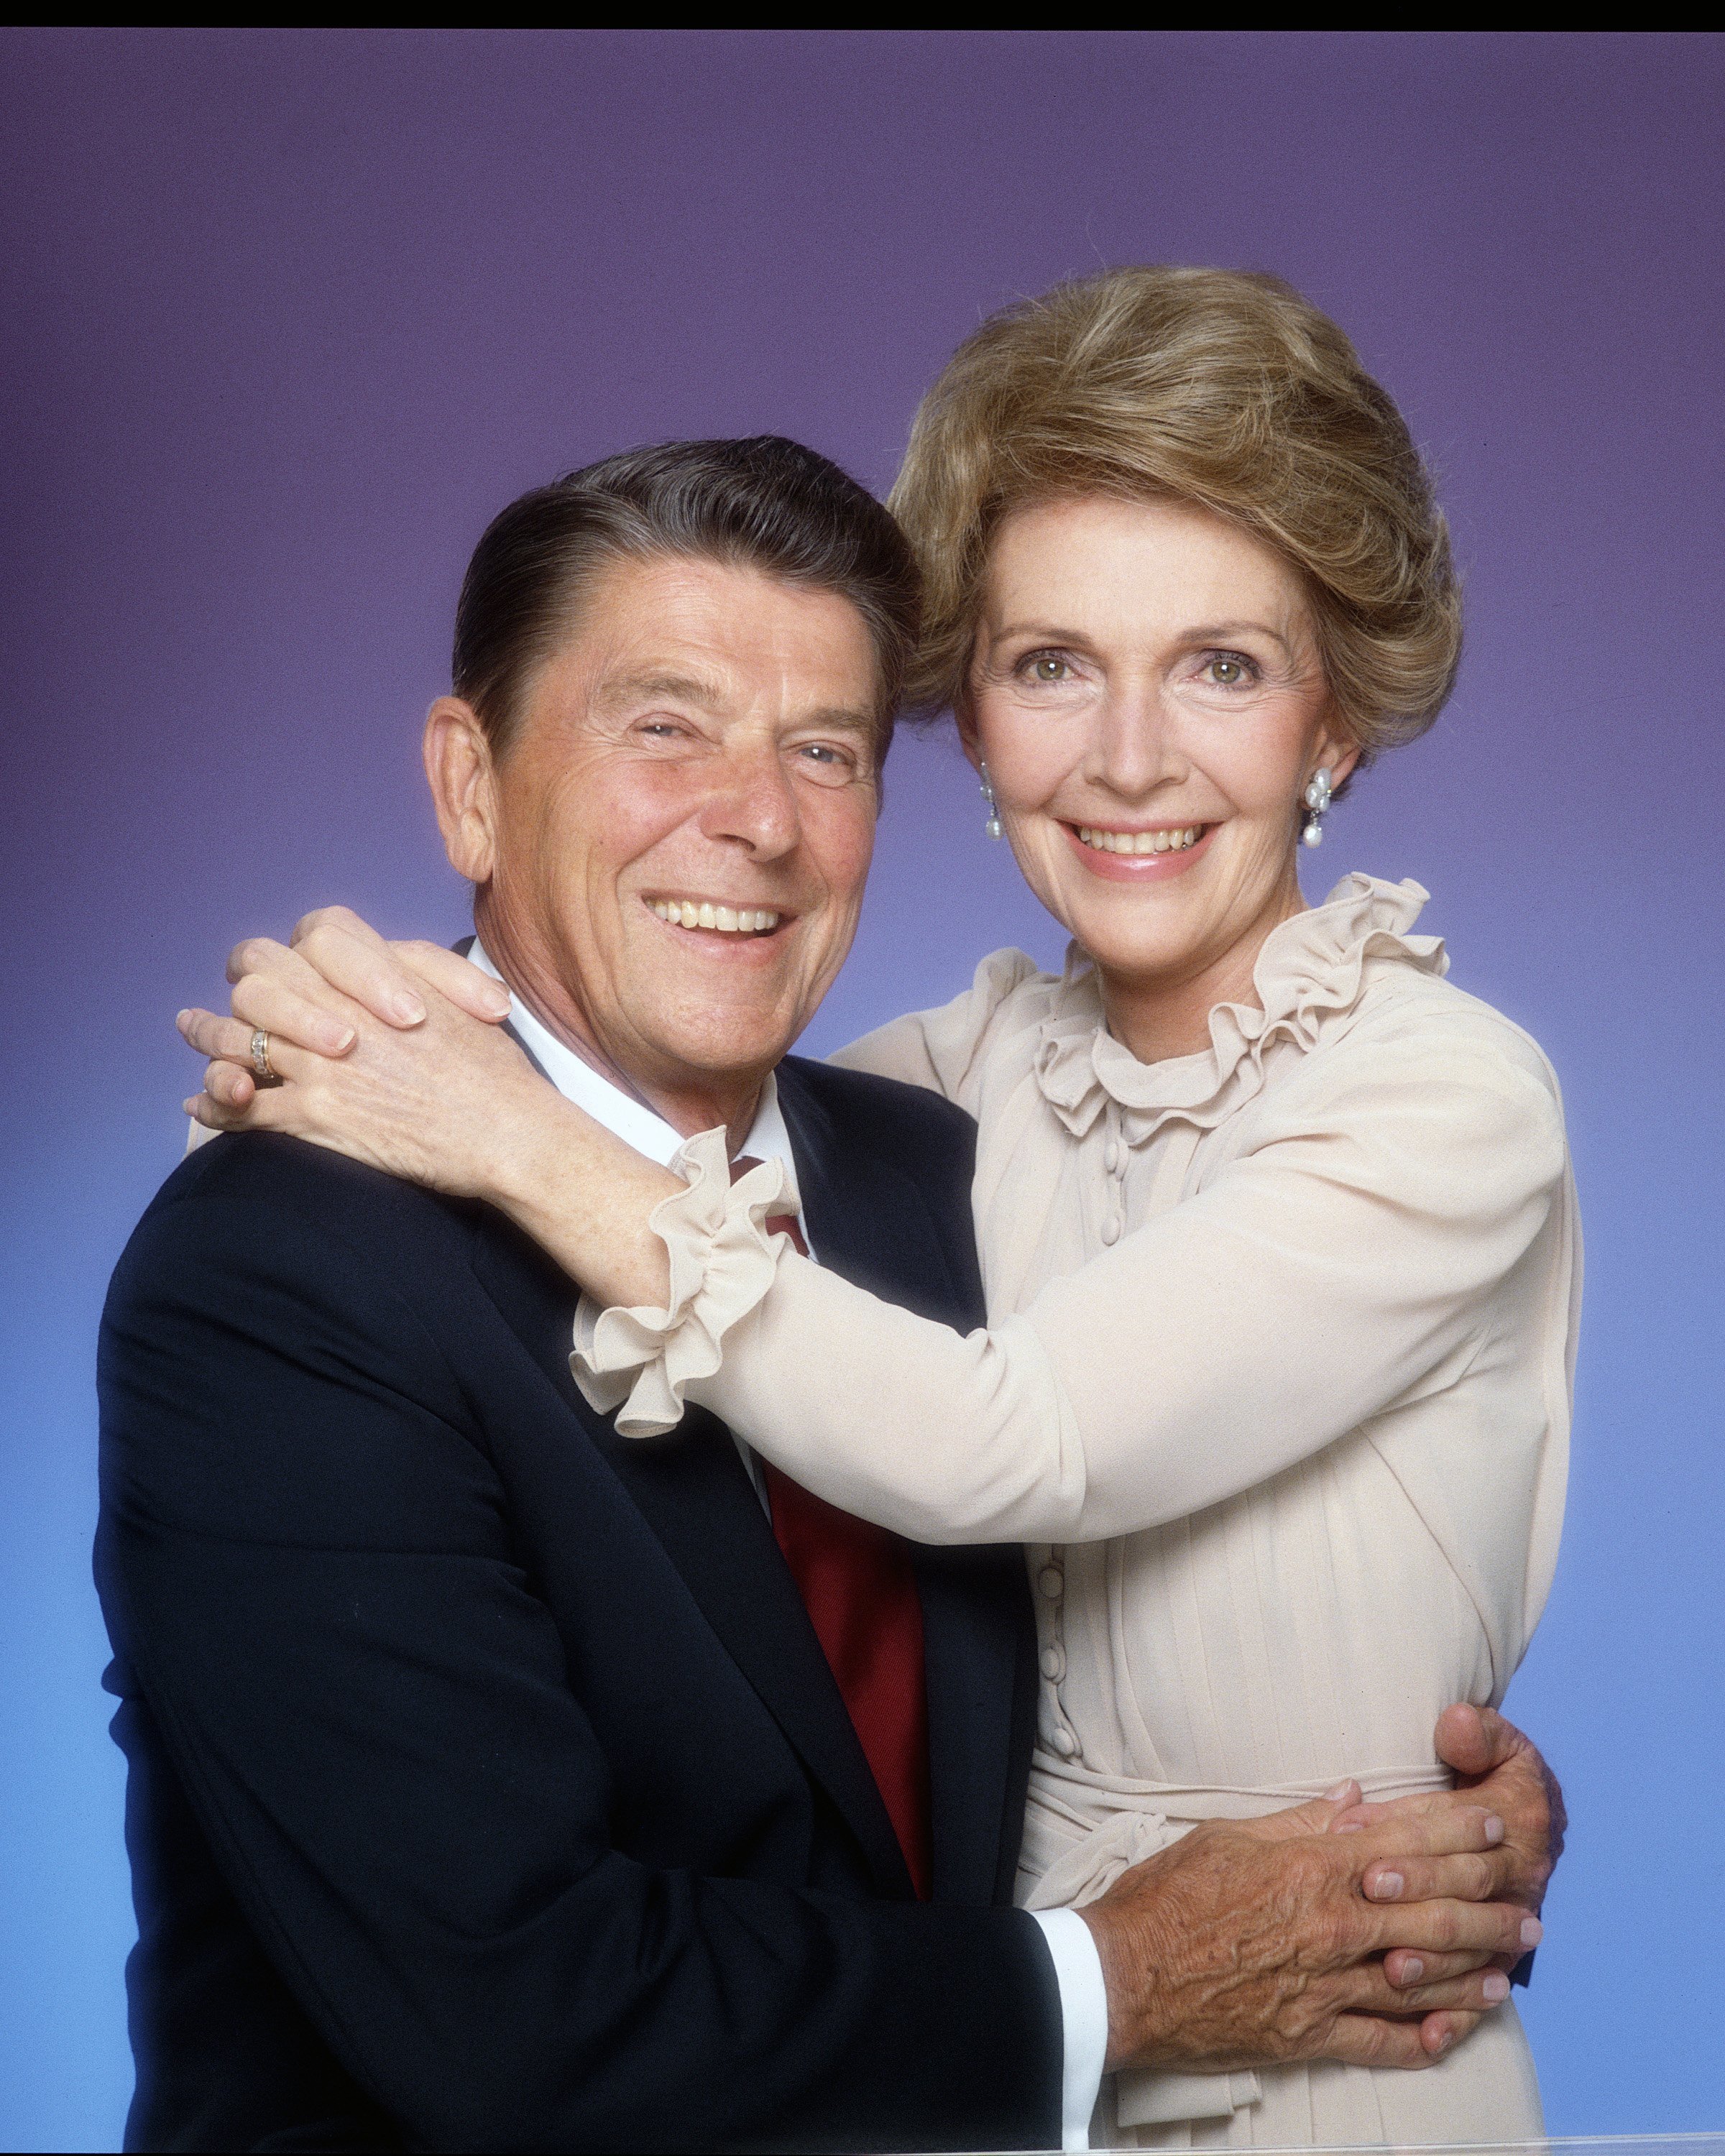 Präsident Ronald Reagan und seine Frau Nancy posieren für eine Porträtsession im Januar 1981 in Los Angeles, Kalifornien. | Quelle: Getty Images